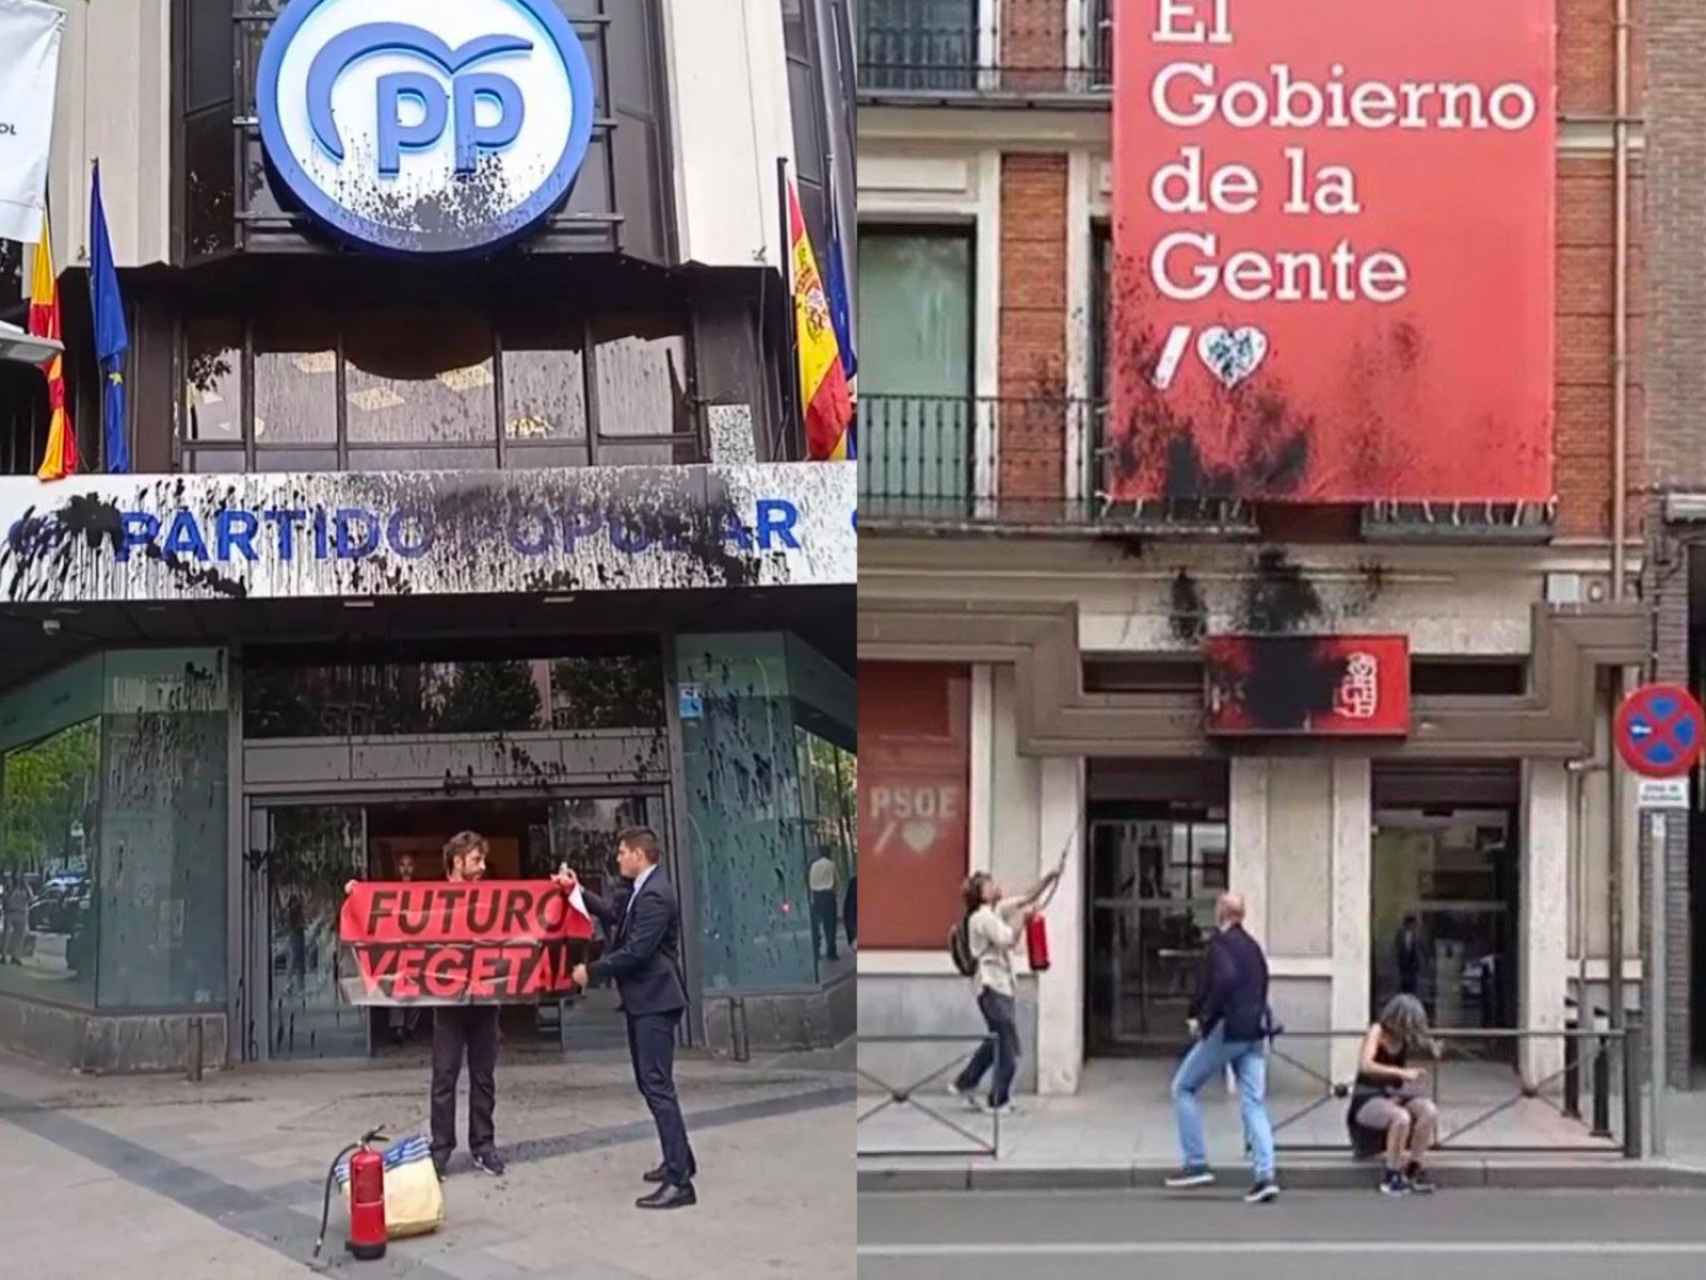 Las sedes del PP en Génova (i) y del PSOE en Ferraz (d), rociadas con pintura negra este lunes.